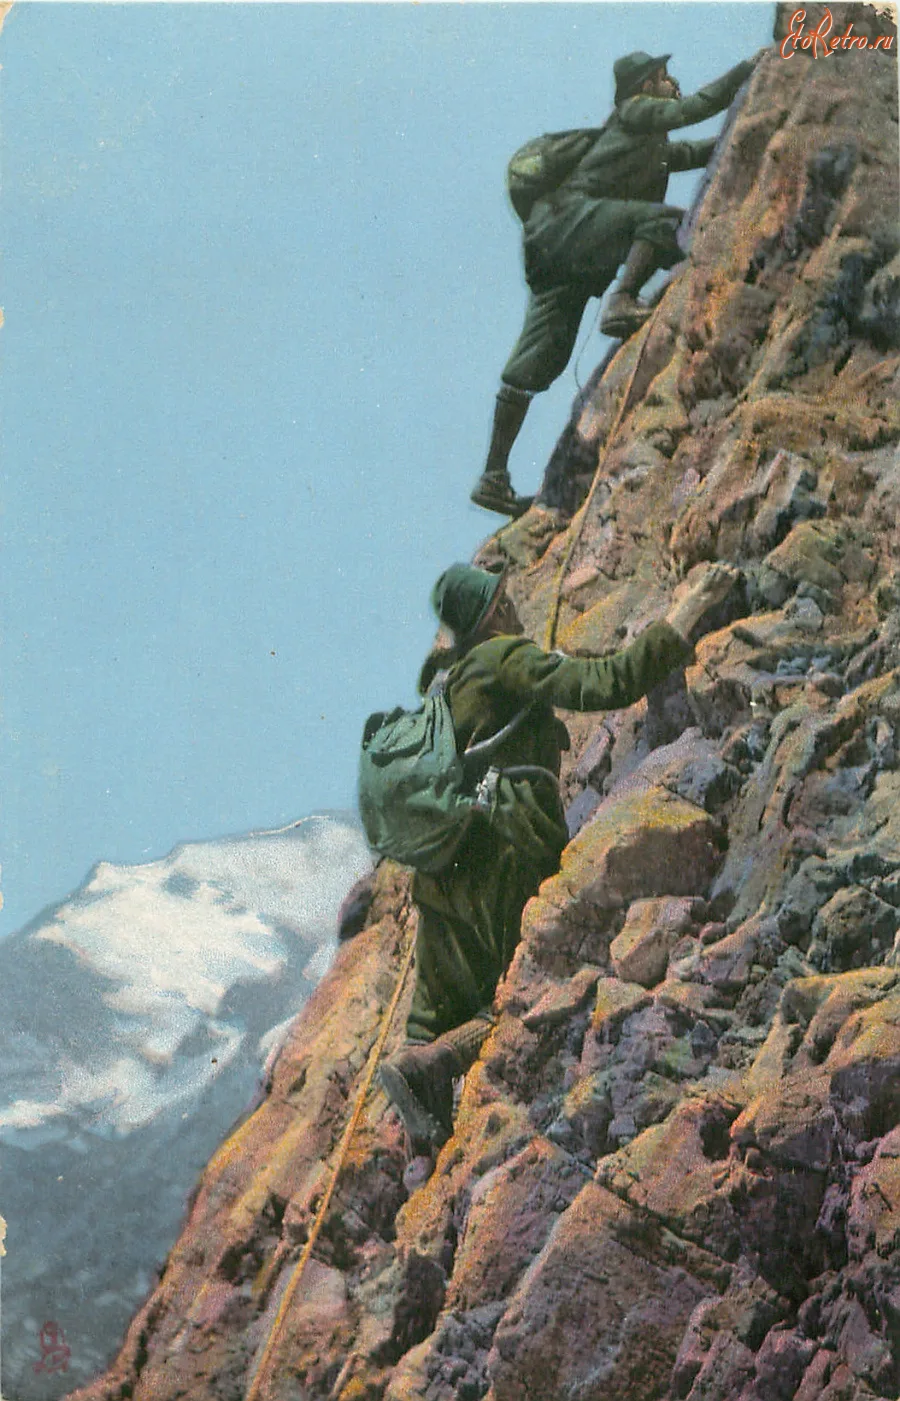 Фото Поздравление с днем рождения альпинисту #71